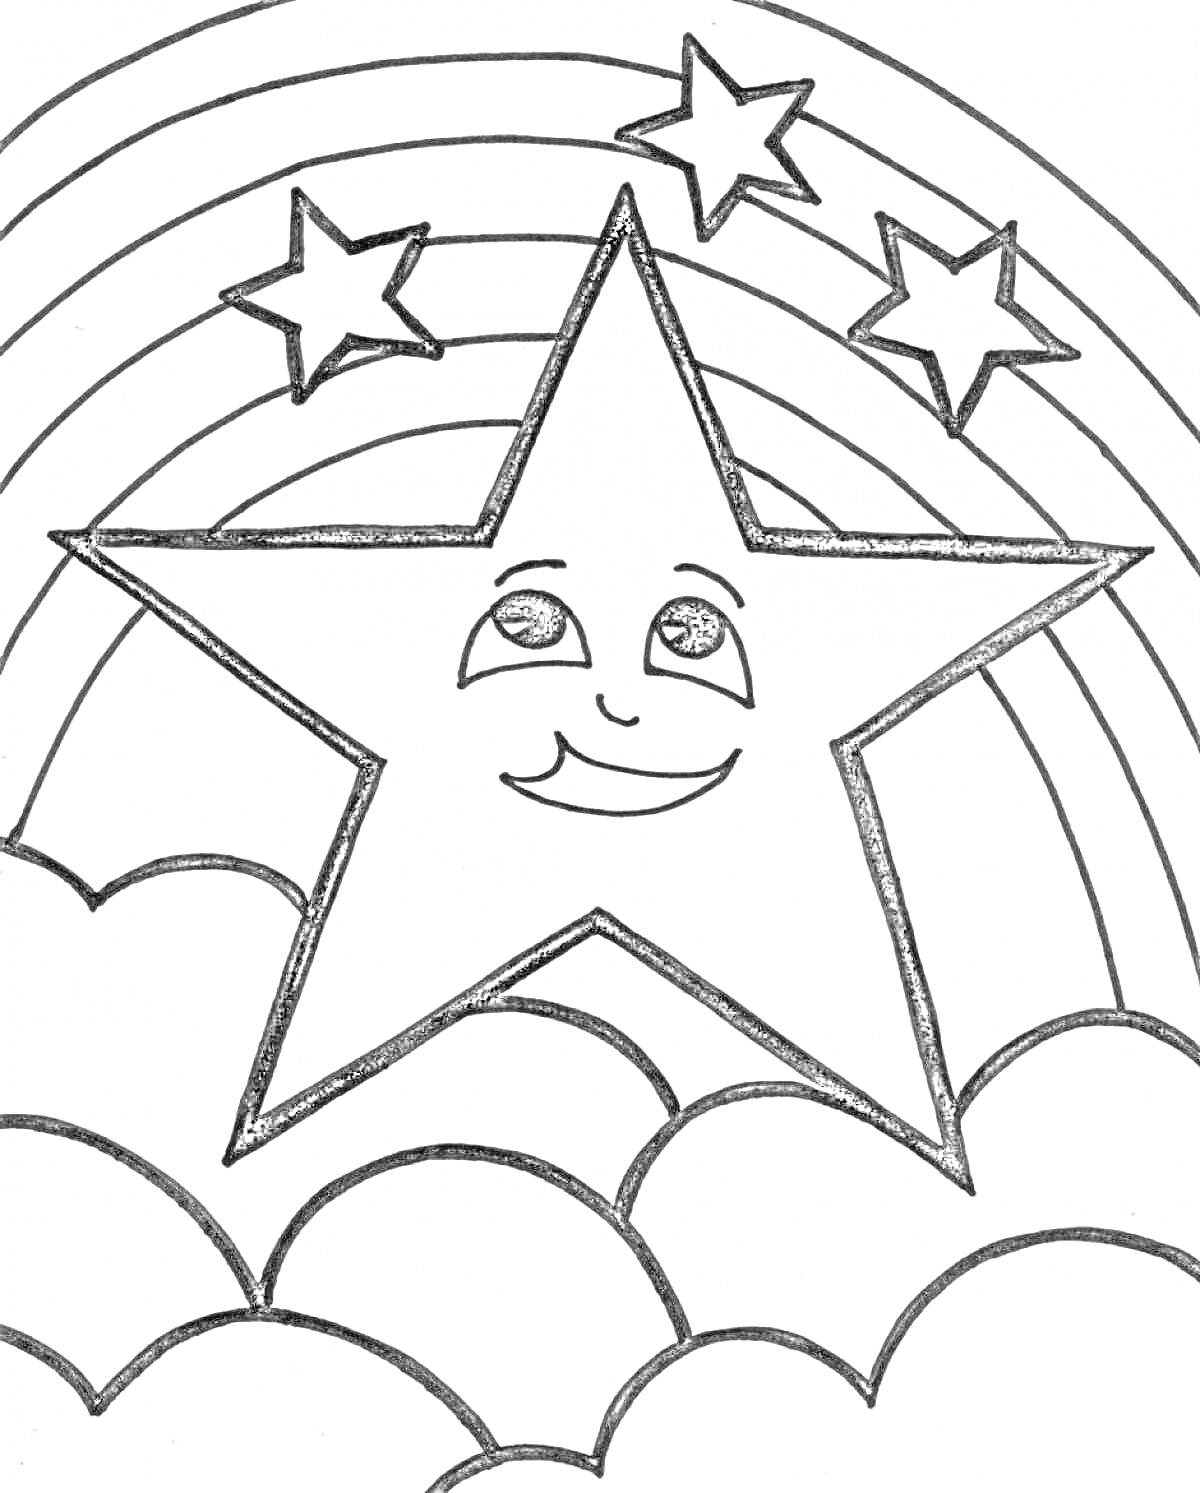 Большая улыбающаяся звезда на облаках с тремя маленькими звёздами и радугой на фоне